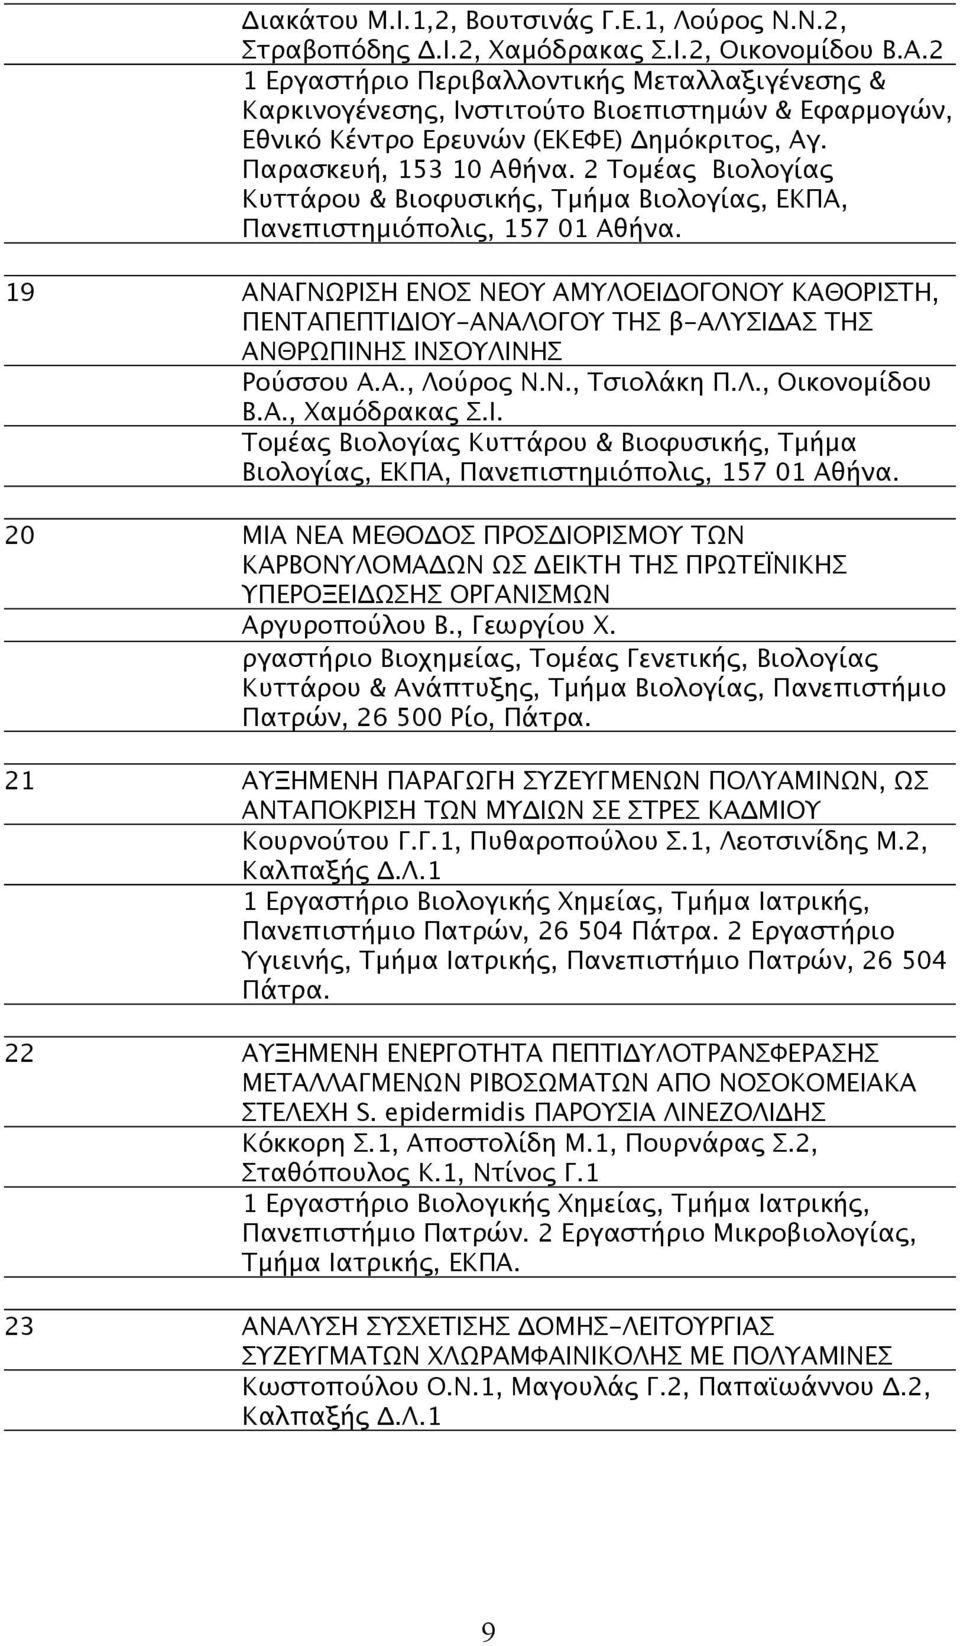 2 Τομέας Βιολογίας Κυττάρου & Βιοφυσικής, Τμήμα Βιολογίας, ΕΚΠΑ, Πανεπιστημιόπολις, 157 01 Αθήνα.